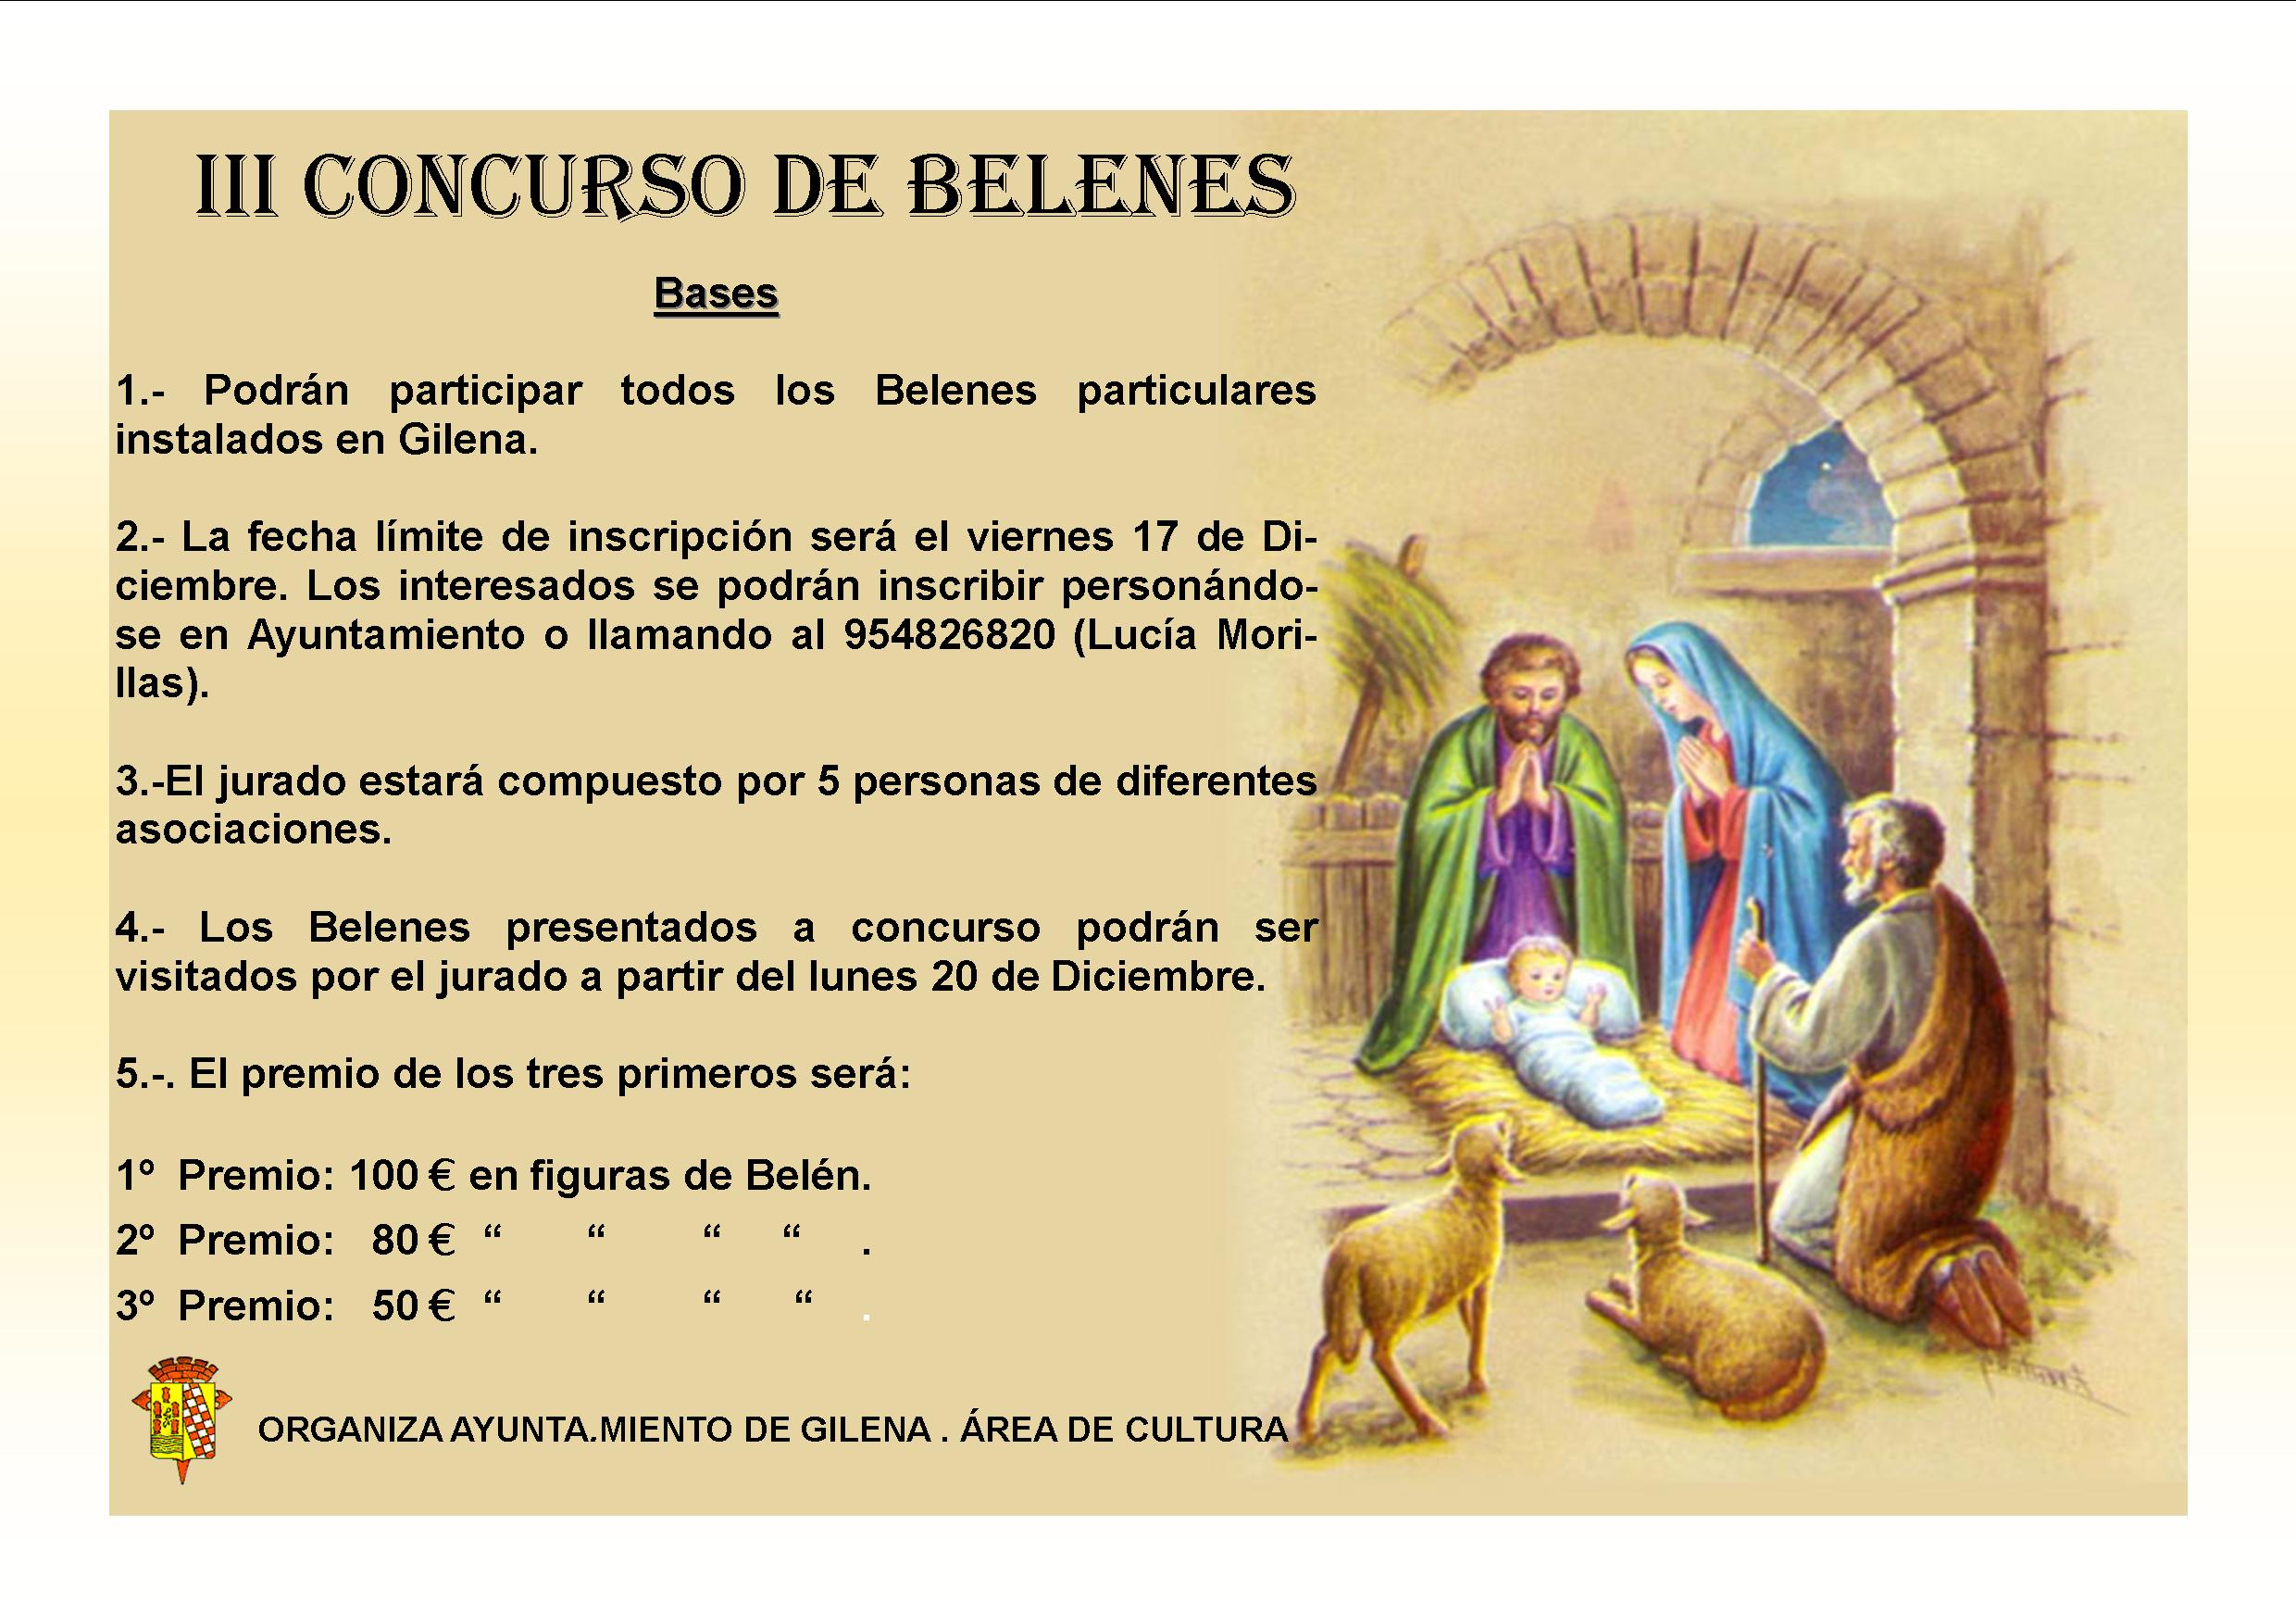 Concurso_de_belenes.jpg